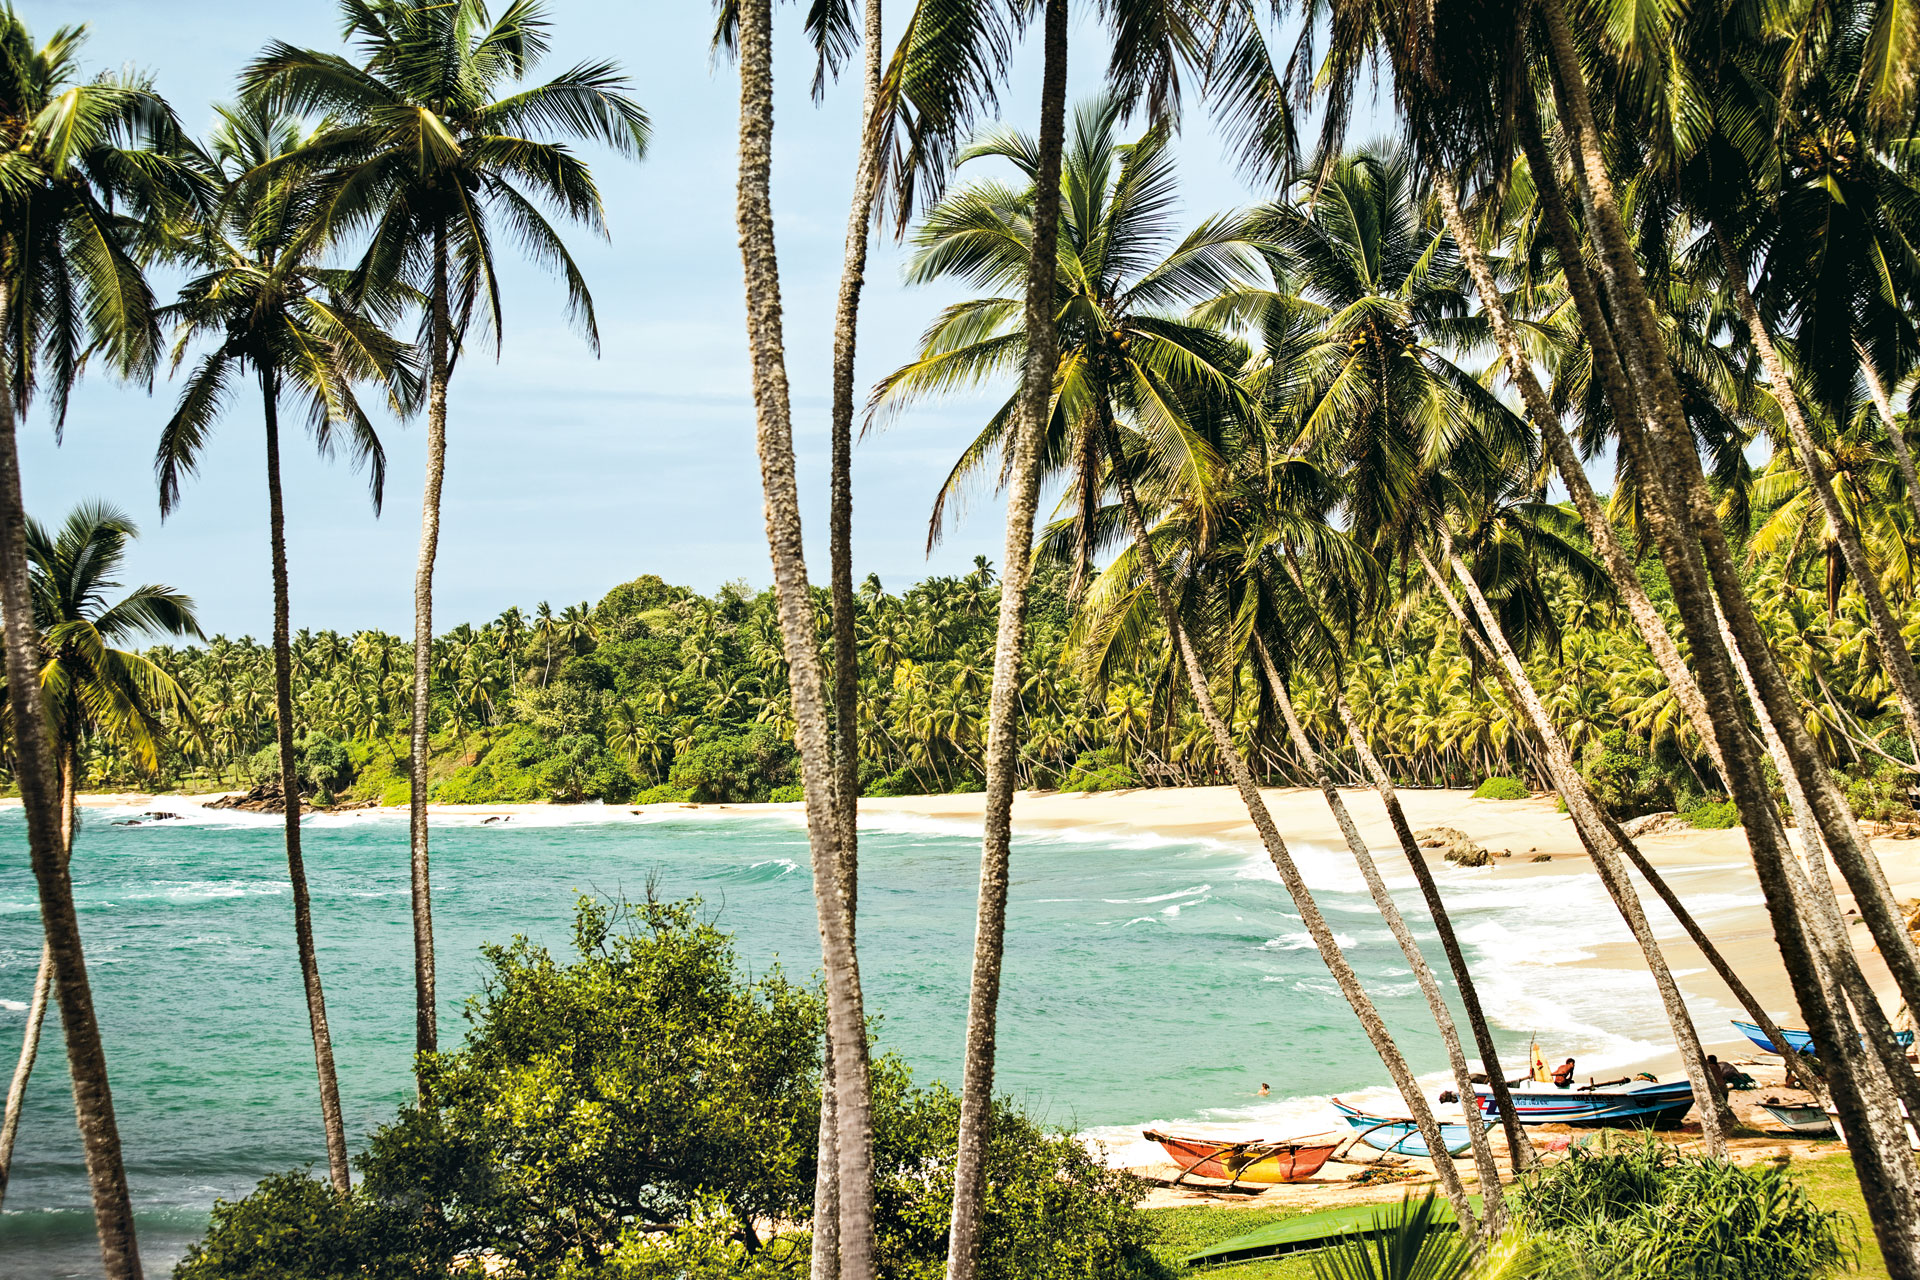 The beach шри ланка. Тангалле Шри Ланка. Пляж Аманвелла Шри Ланка. Остров Шри-Ланка в индийском океане. Шри Ланка туризм.